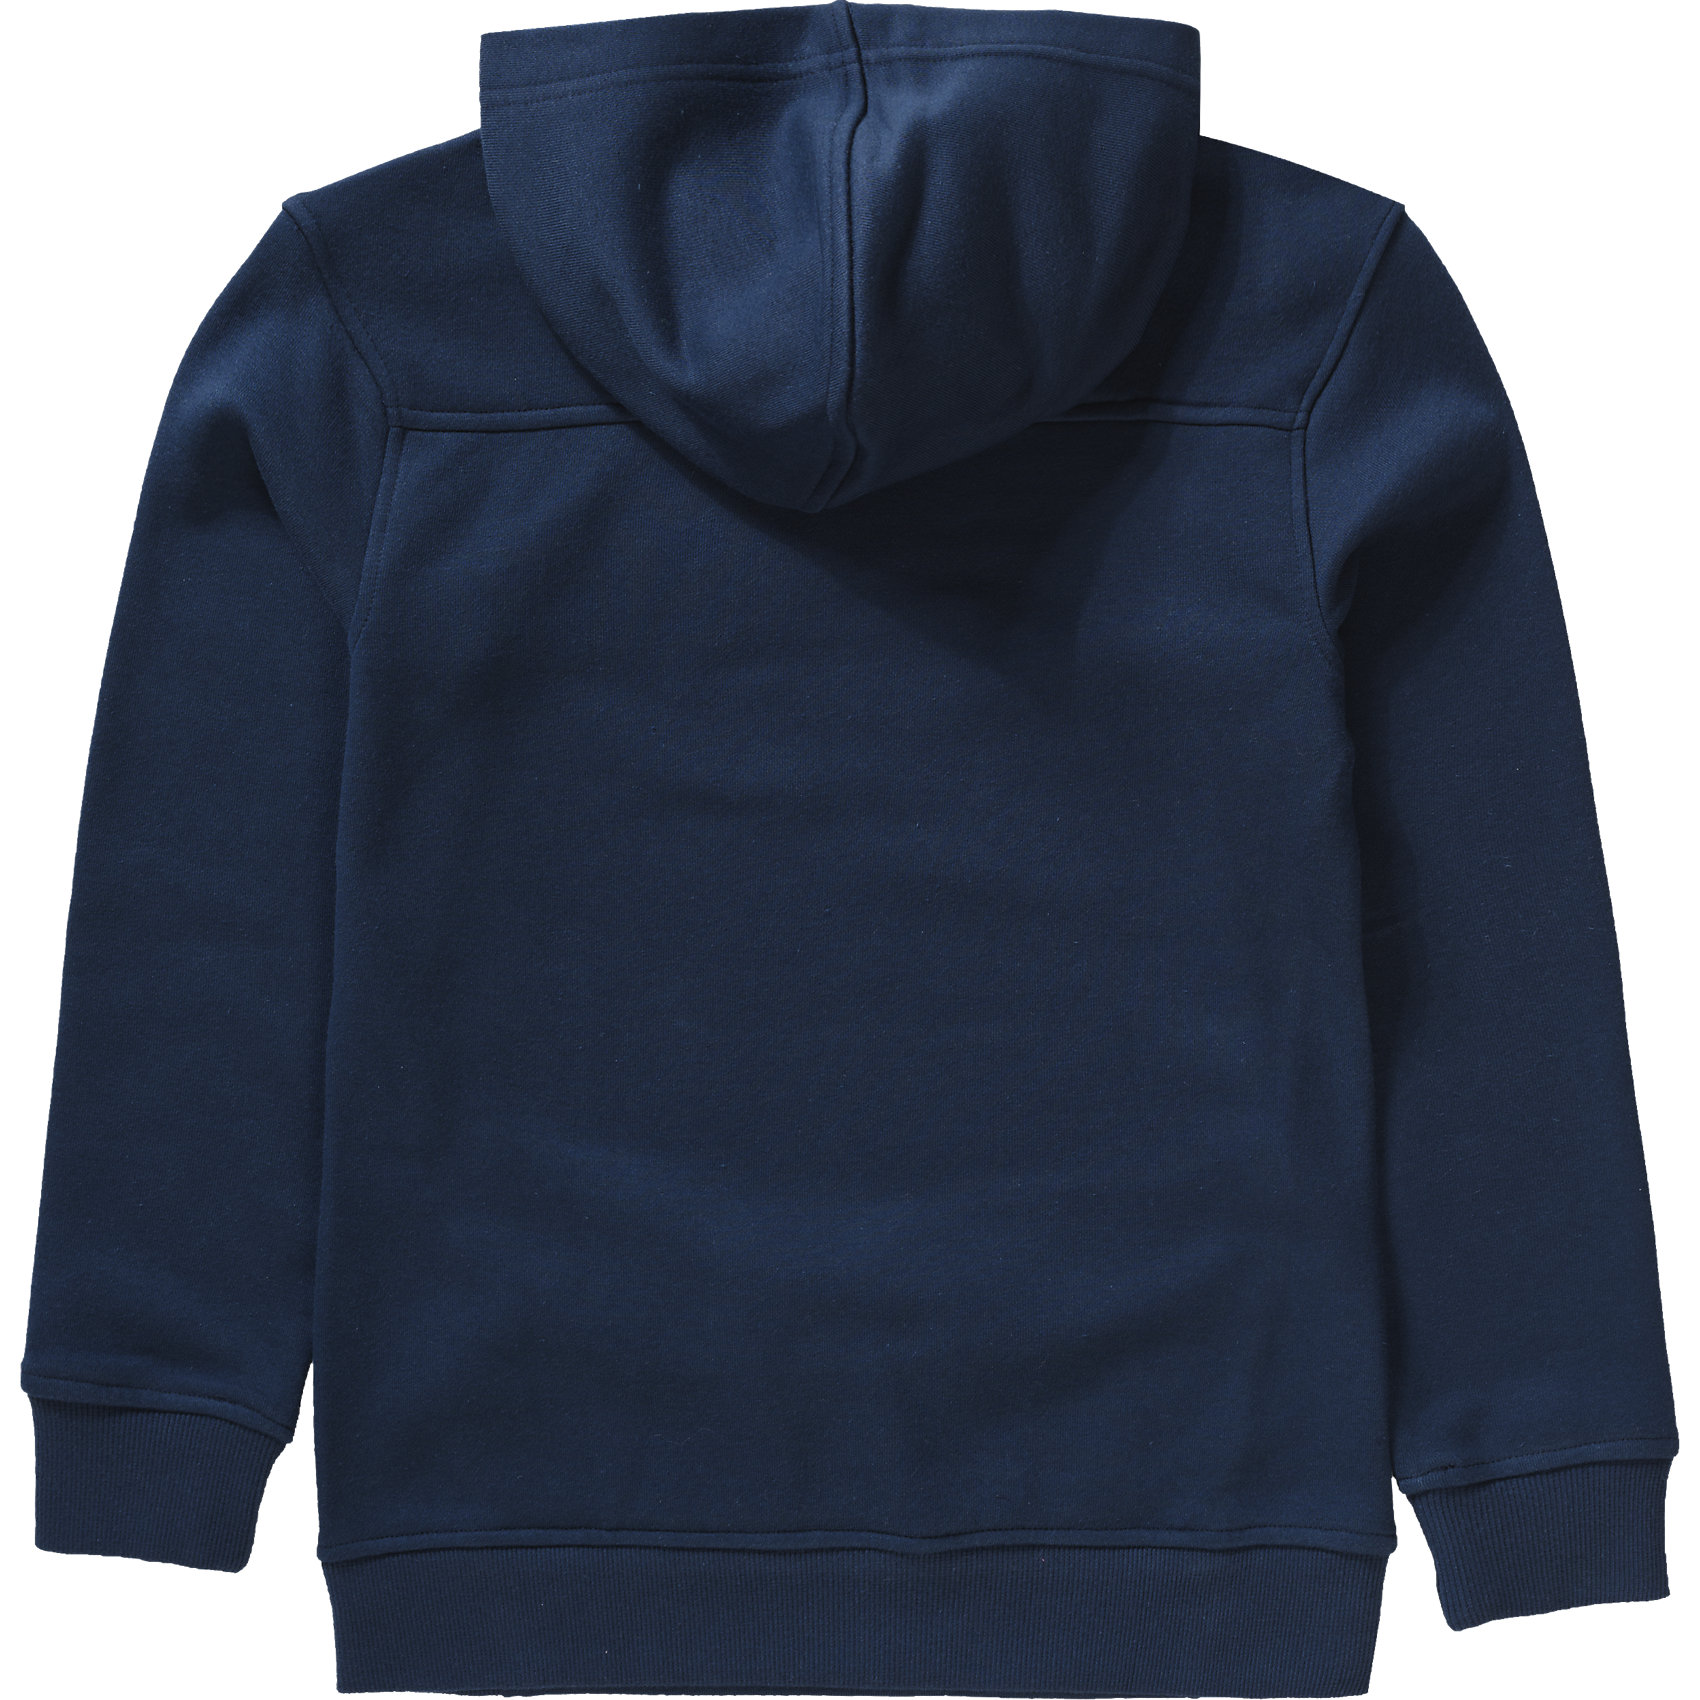 Neu Reebok Sweatshirt mit Kapuze für Jungen dunkelblau 6712016 